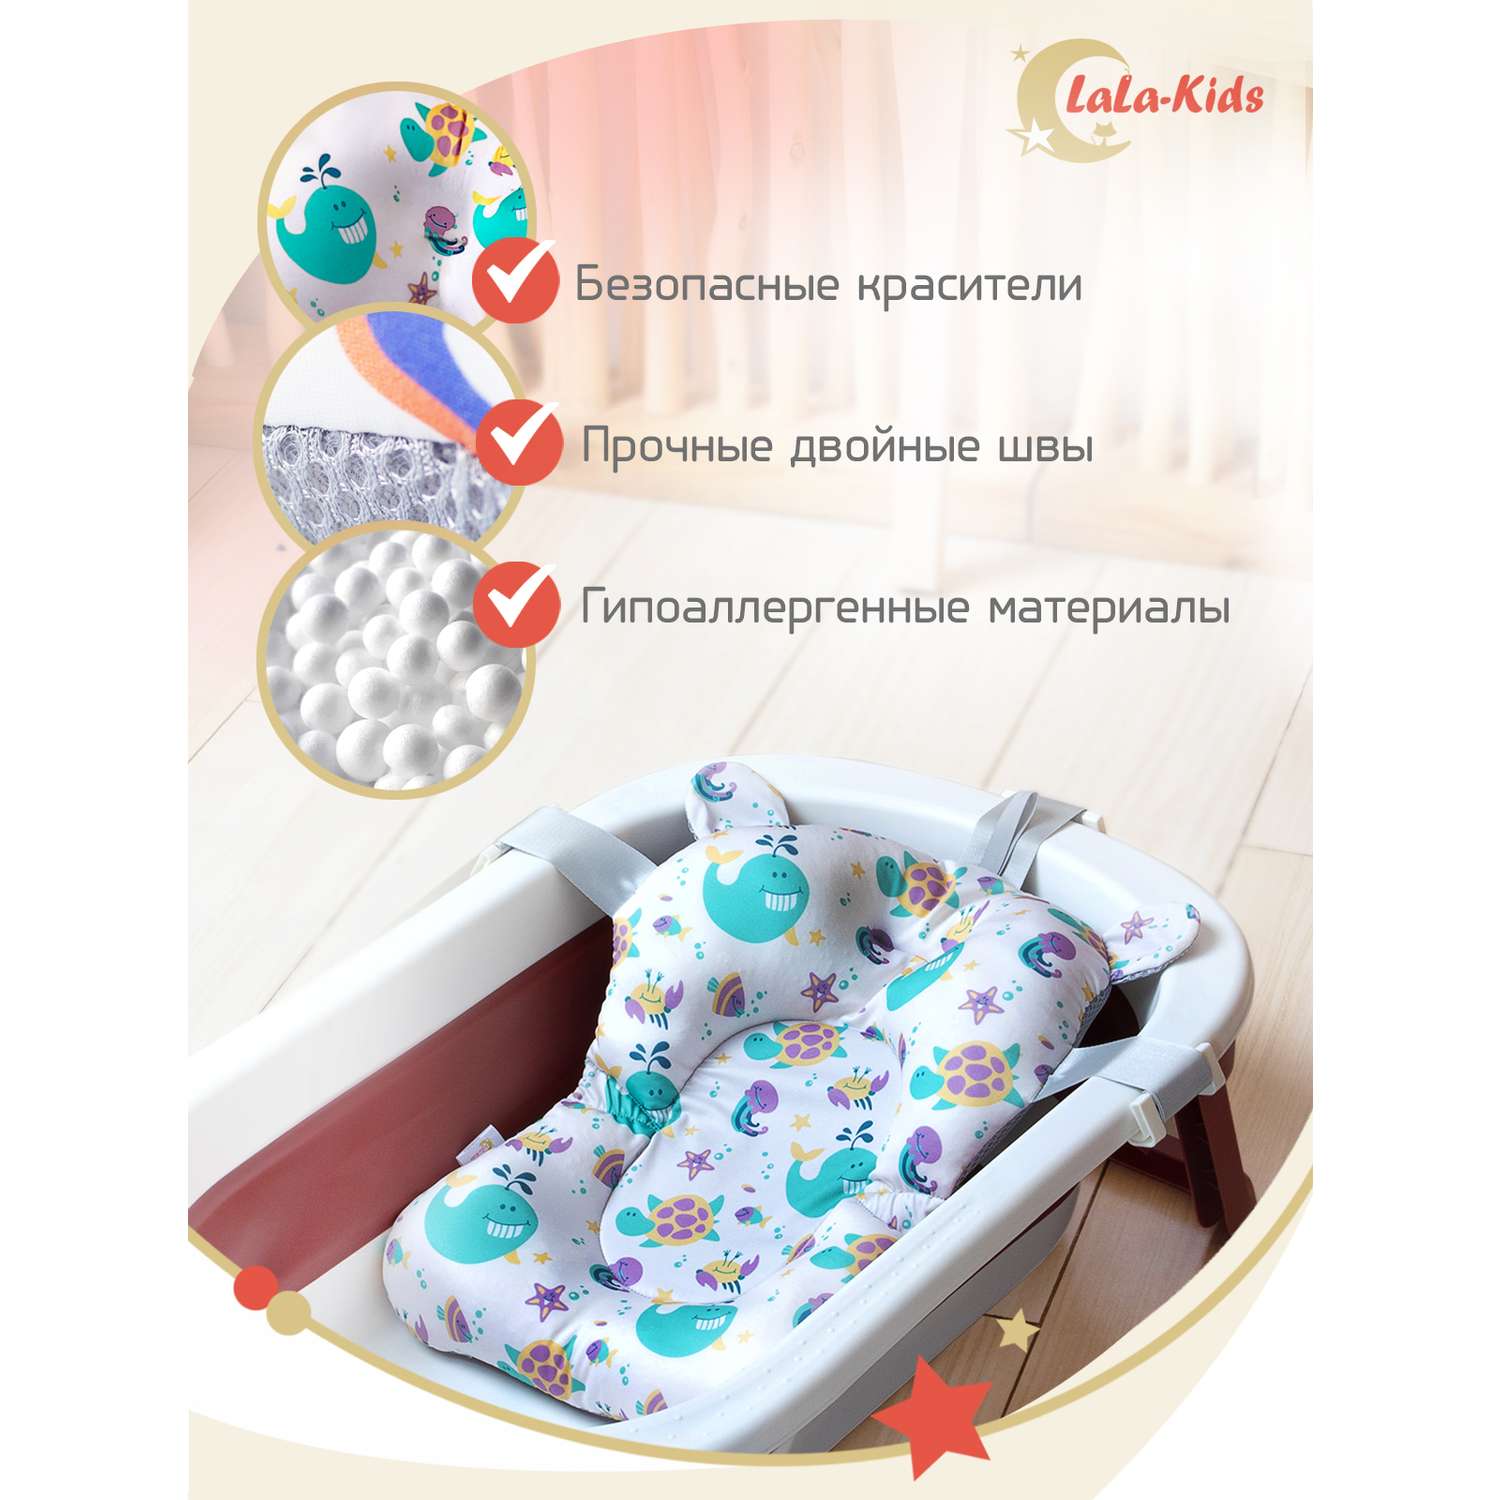 Матрасик для детской ванночки LaLa-Kids для купания новорожденных - фото 7